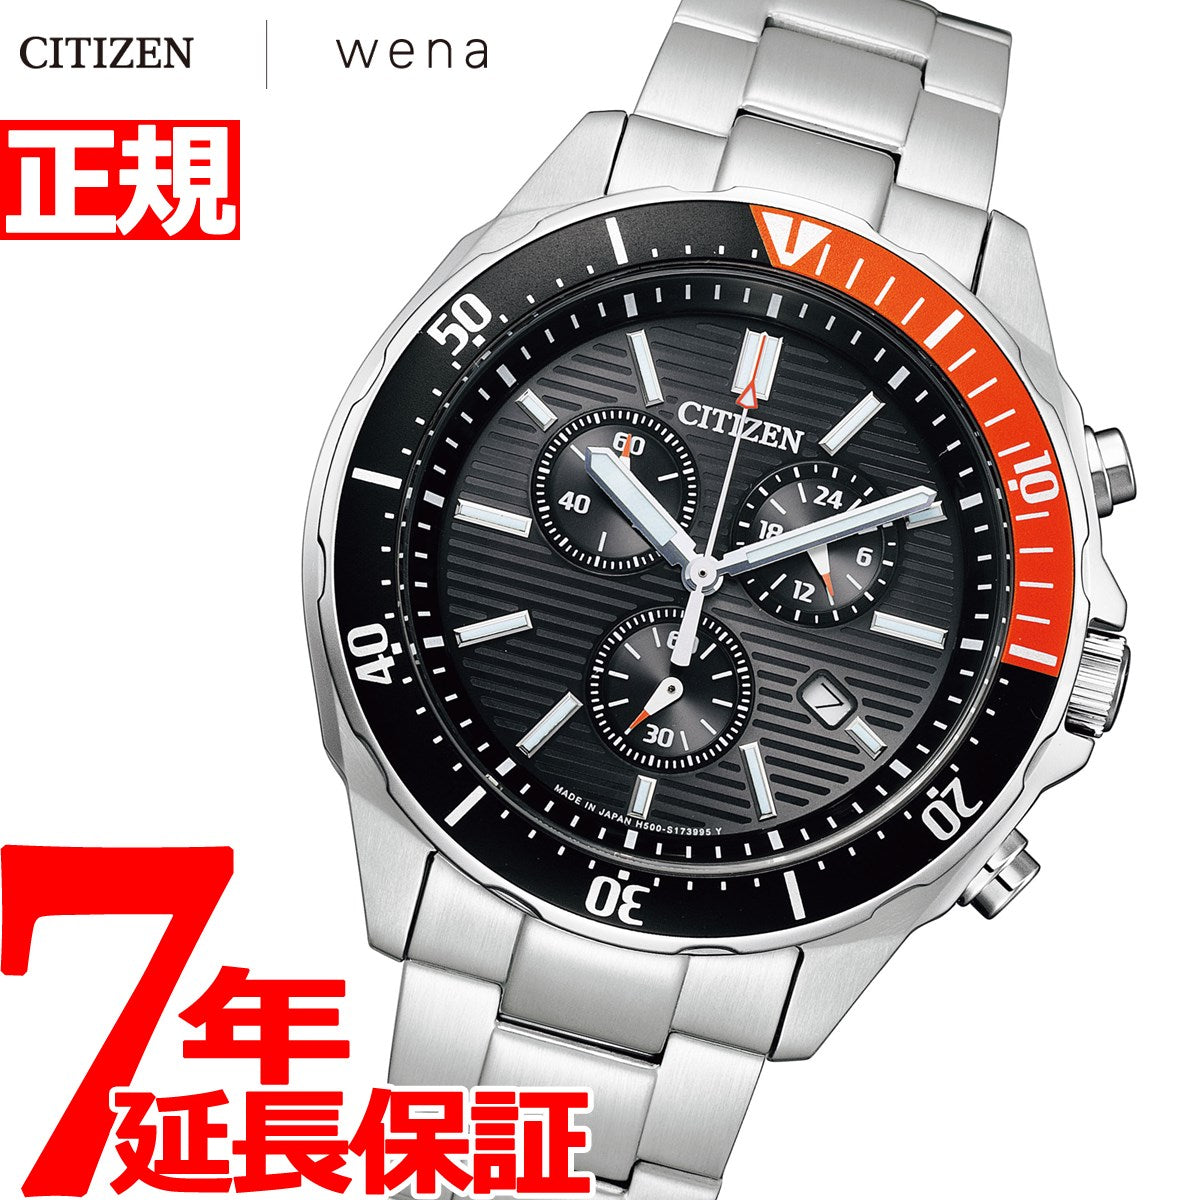 シチズンコレクション CITIZEN COLLECTION wena 3 搭載モデル スマートウオッチ エコドライブ 腕時計 メンズ  AT2498-51E